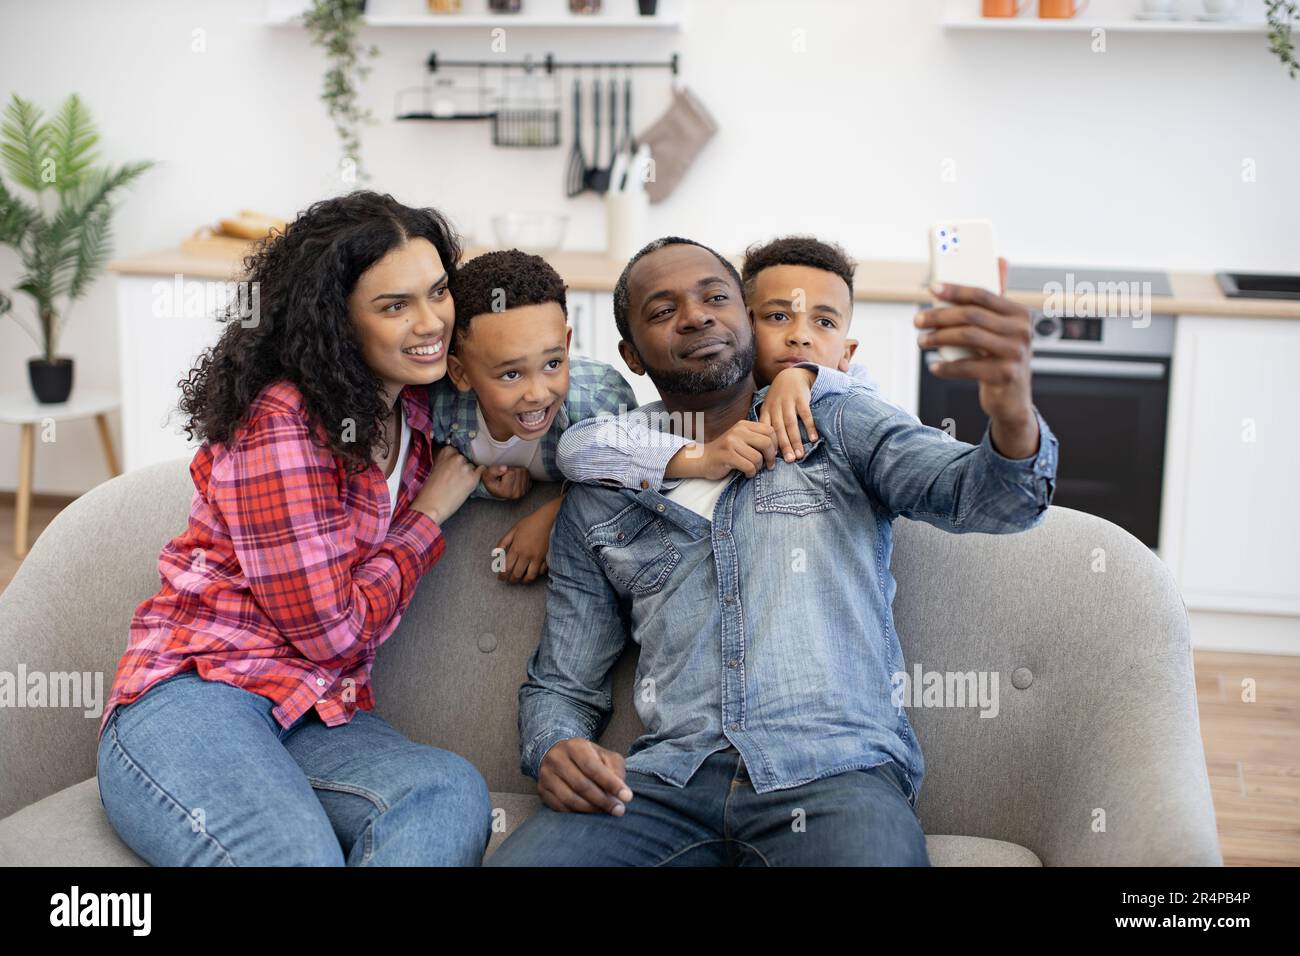 Positive multikulturelle vierköpfige Familie, die ein modernes Smartphone benutzt, während sie sich im Wohnzimmer ausruht. Liebenswerte Söhne, die Eltern umarmen, während Dad Selfie über mobile Webcam im Zimmer macht. Stockfoto